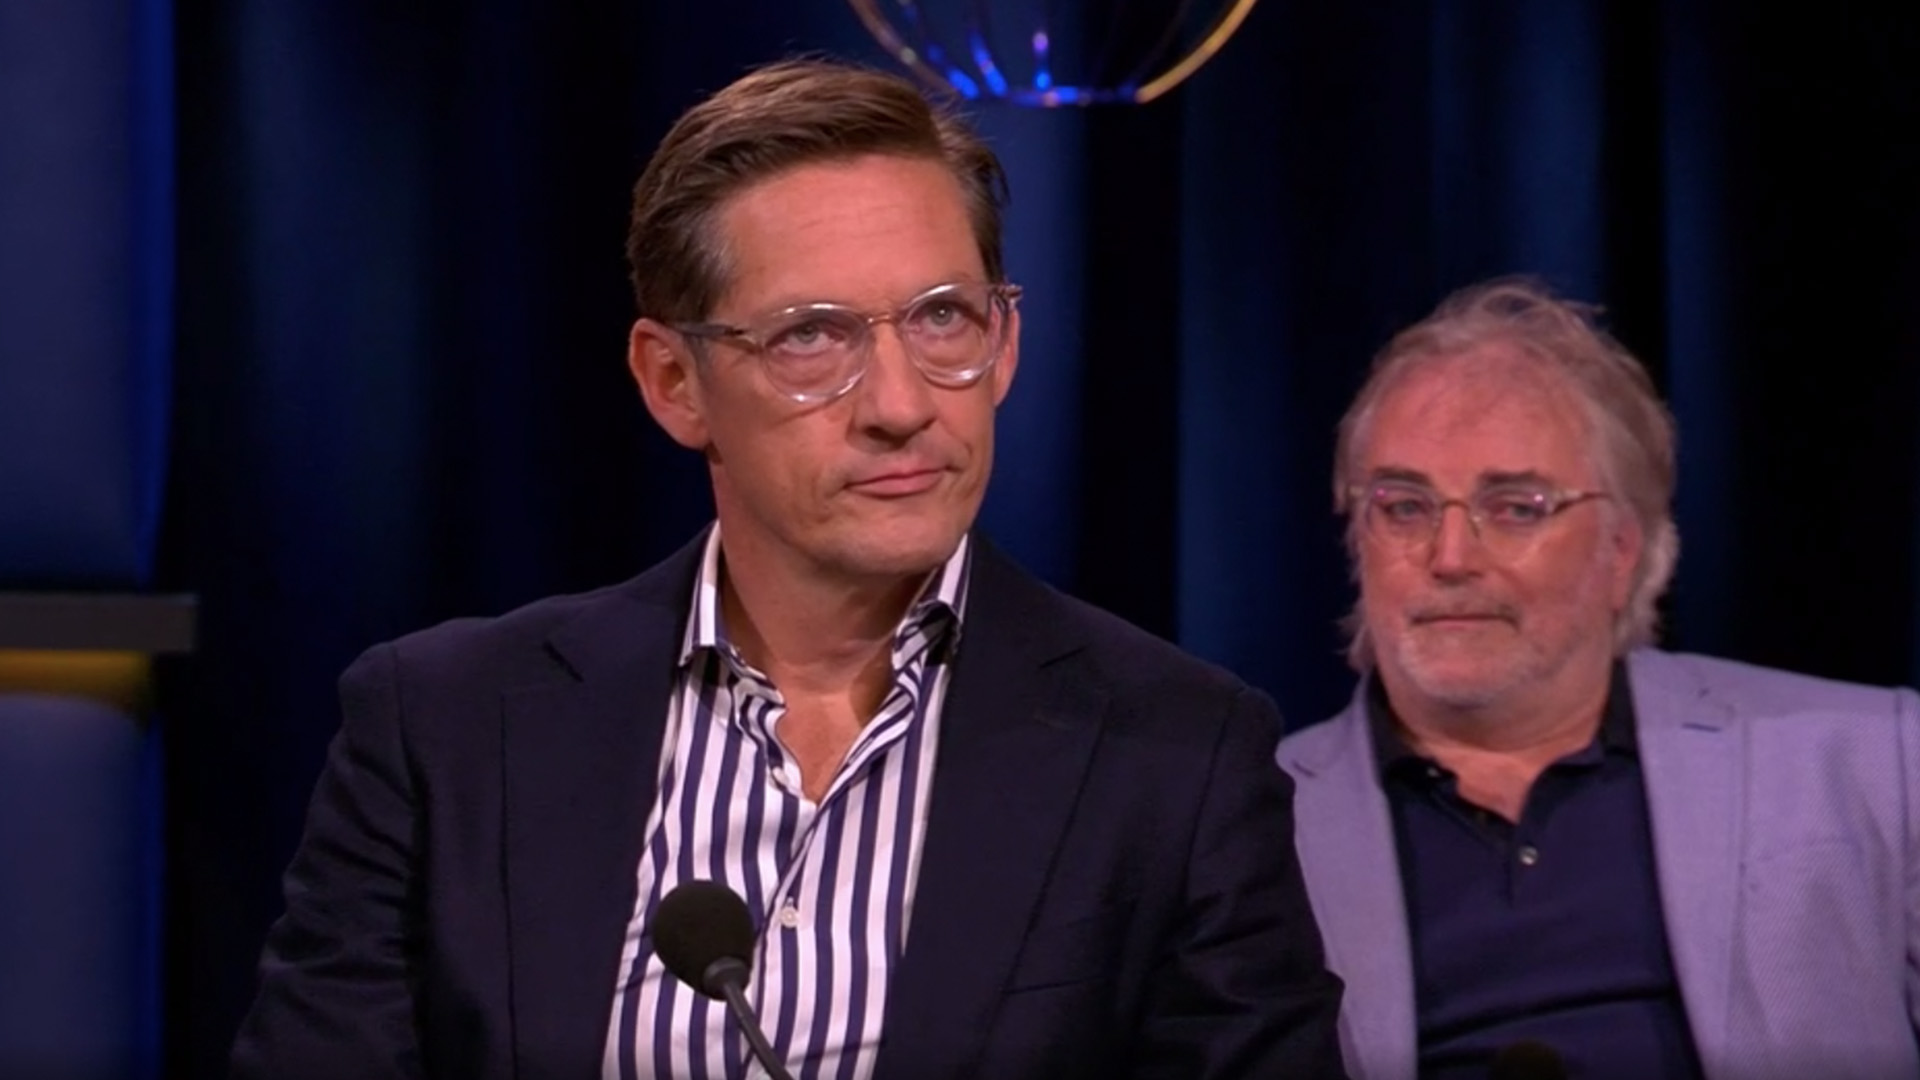 Joost Eerdmans Staat Vierde Op De Kandidatenlijst Van Forum Voor Democratie Op1